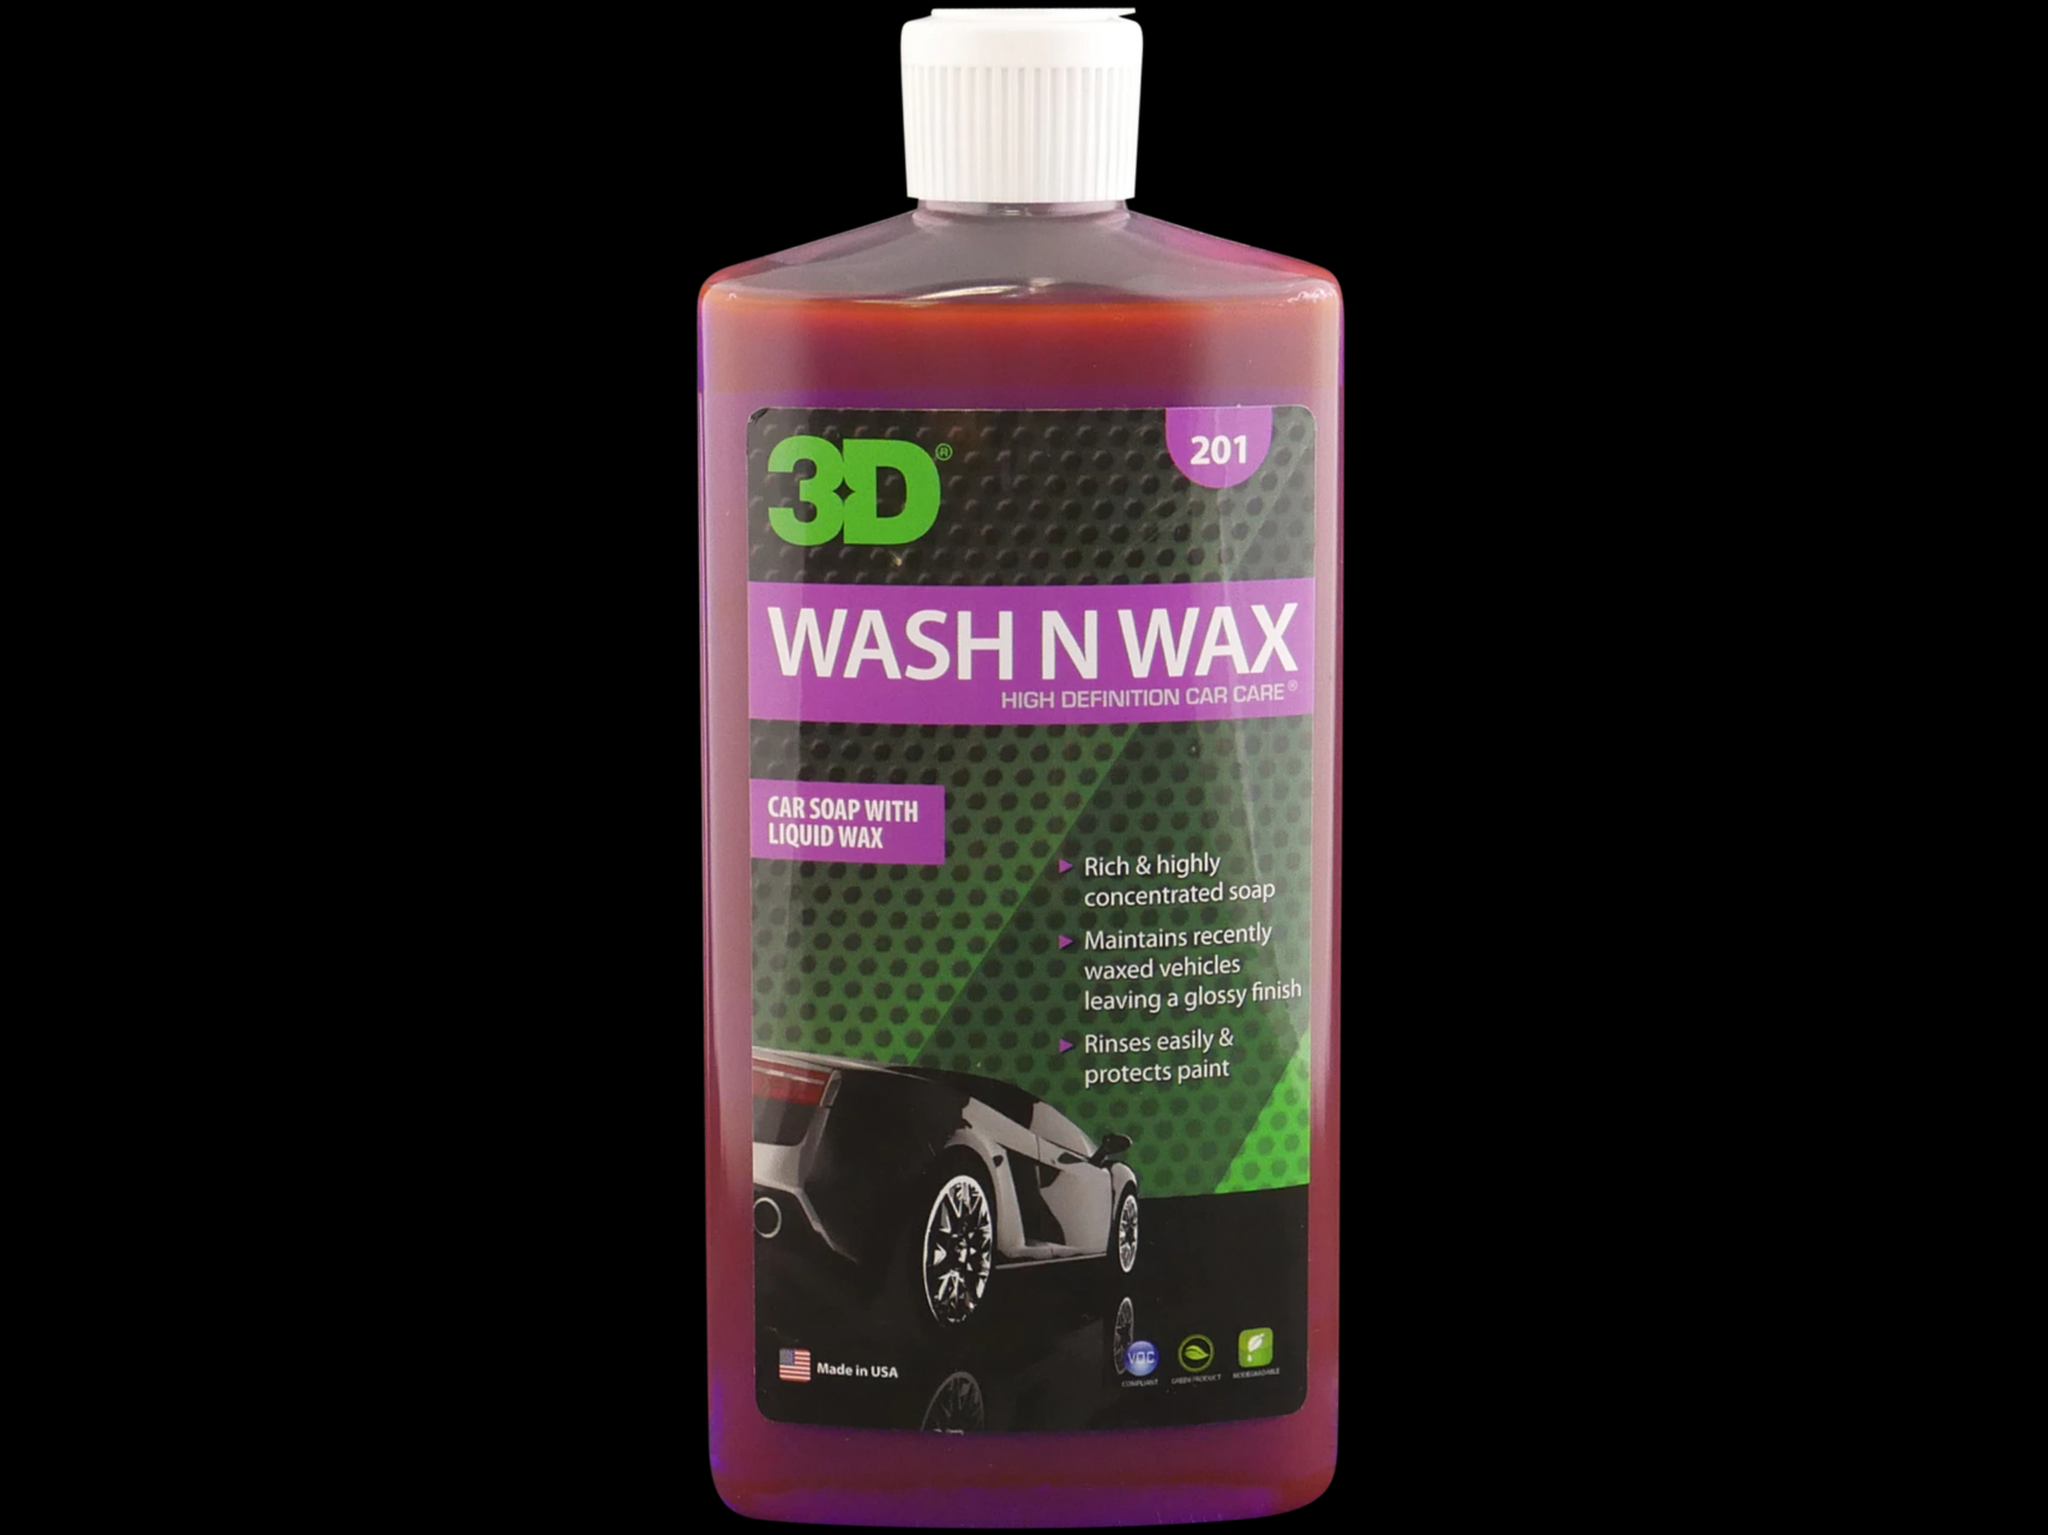  3D Wash N Wax Car Wash Soap - pH Balanced, Easy Rinse